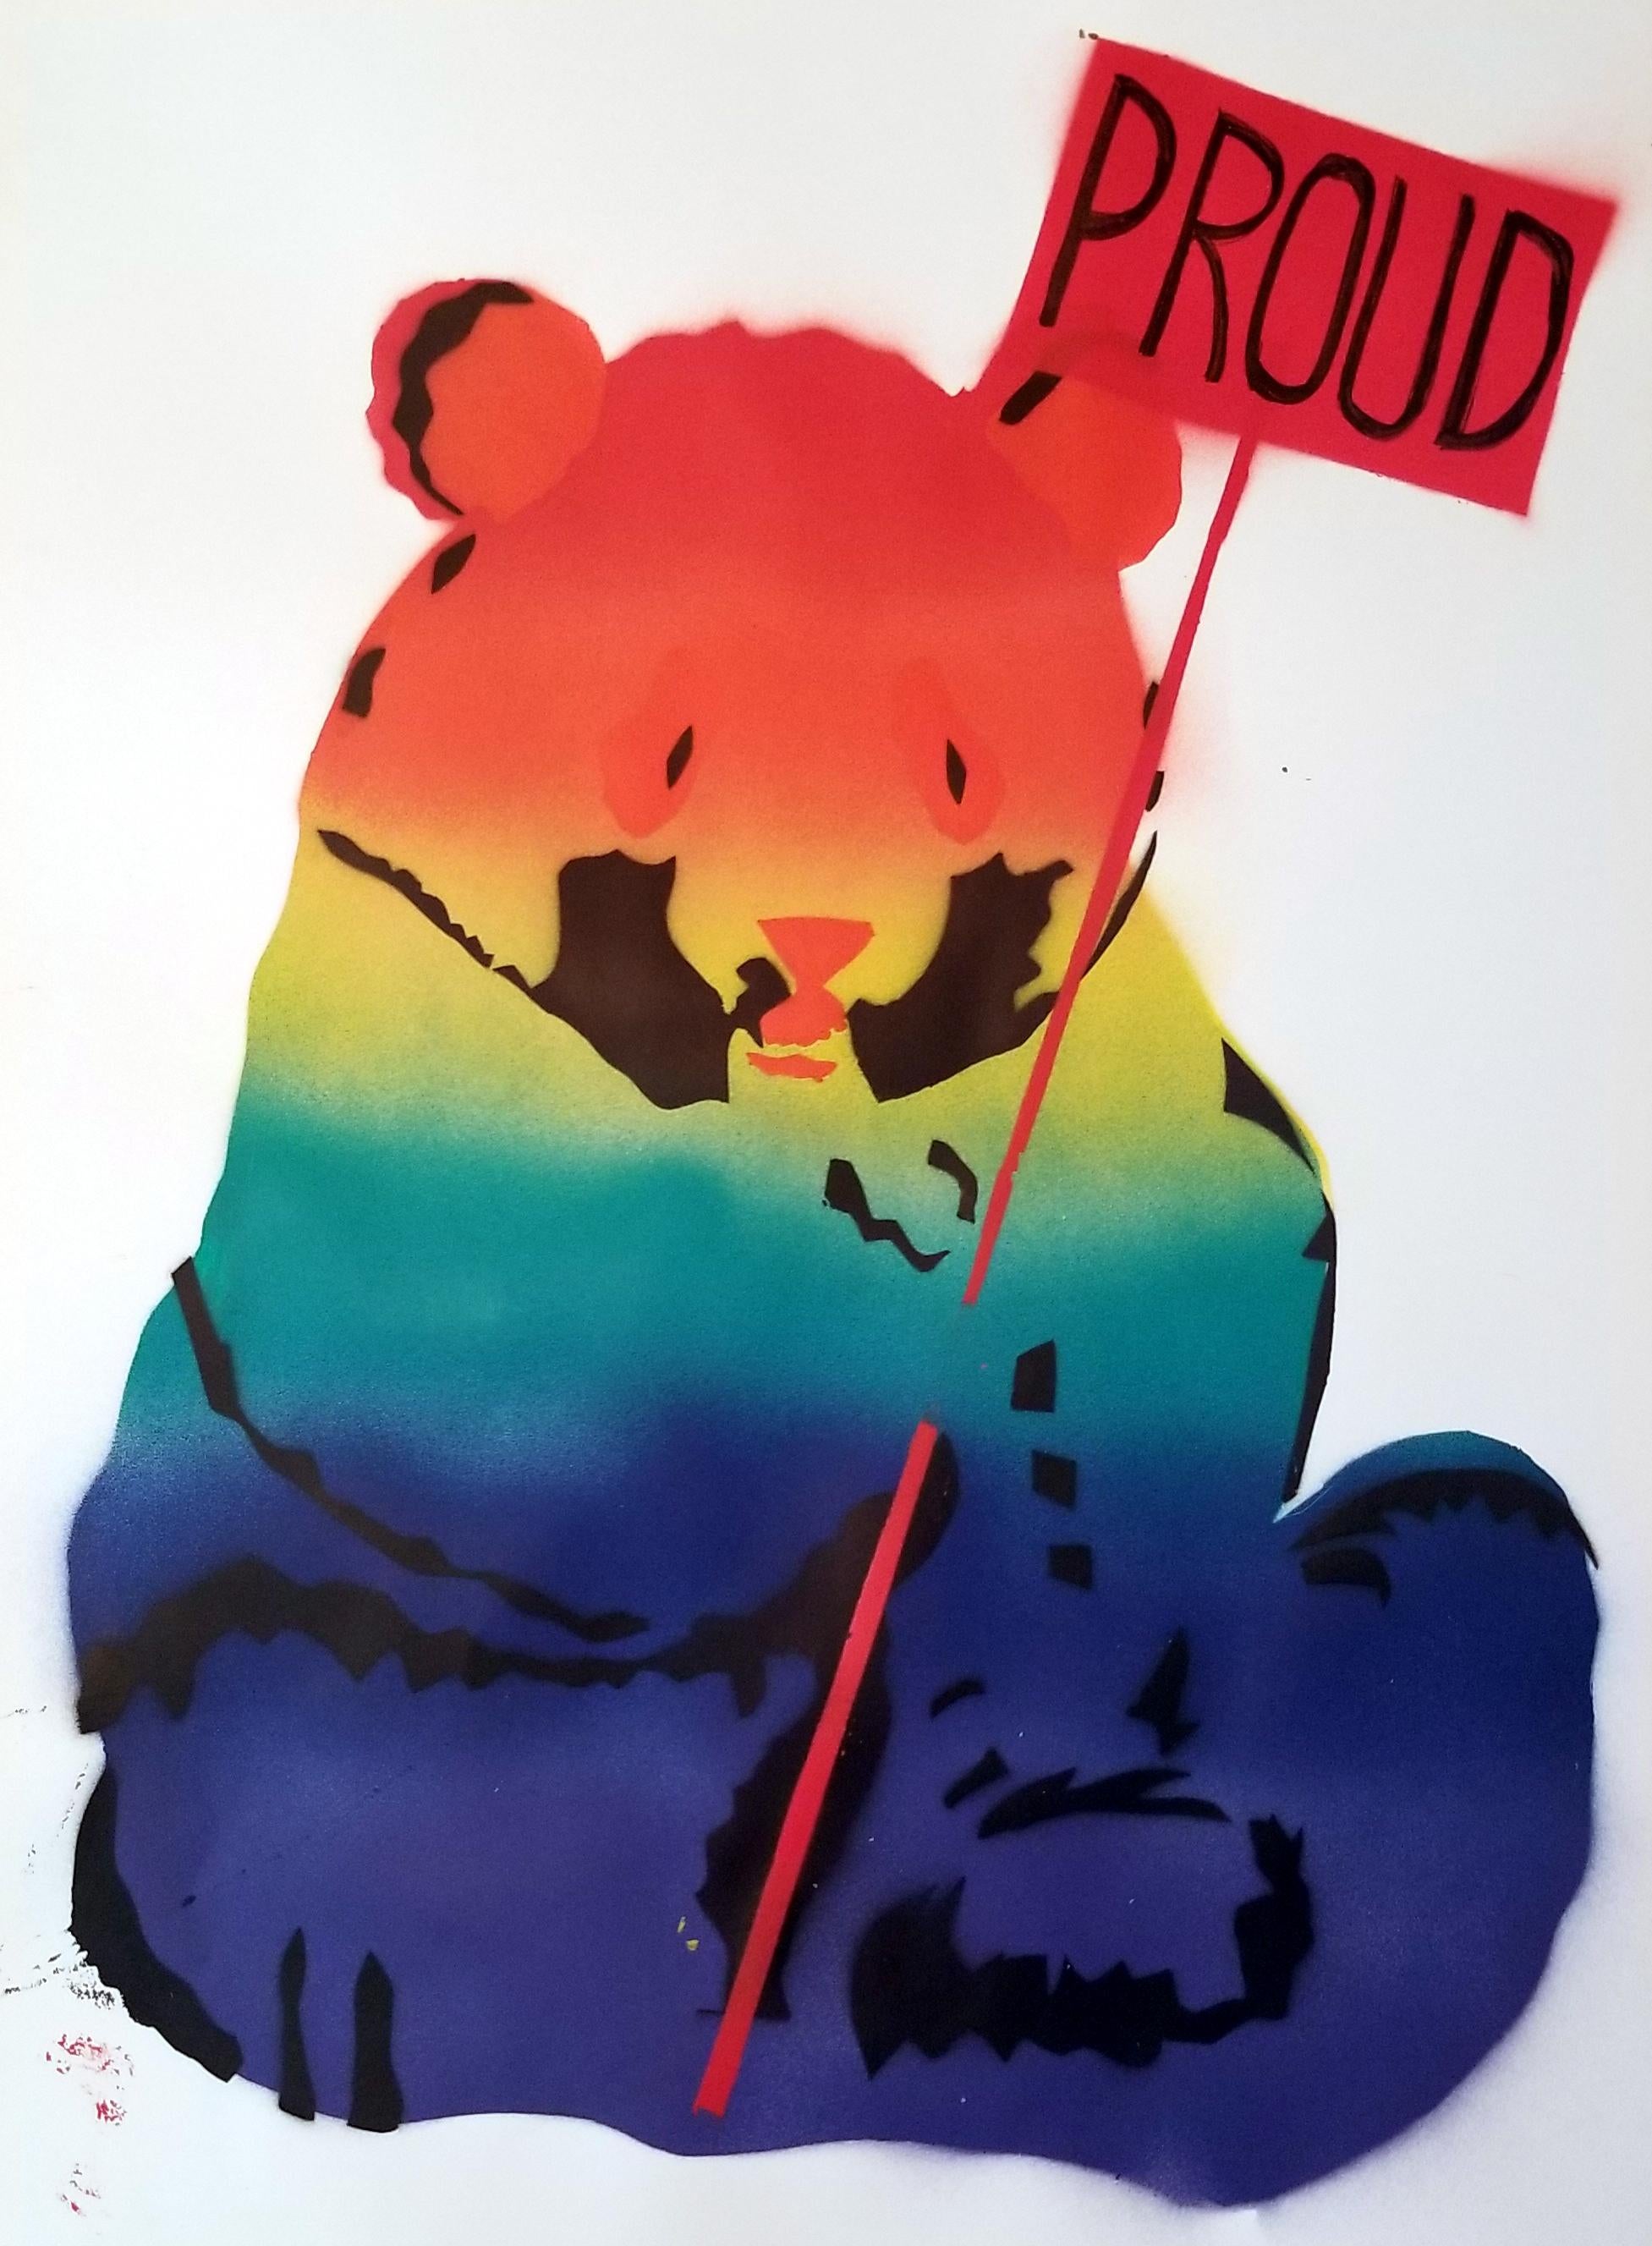 peinture au pochoir à 5 couches ( rose, argent, rouge, noir )
Ours Panda tenant une pancarte 